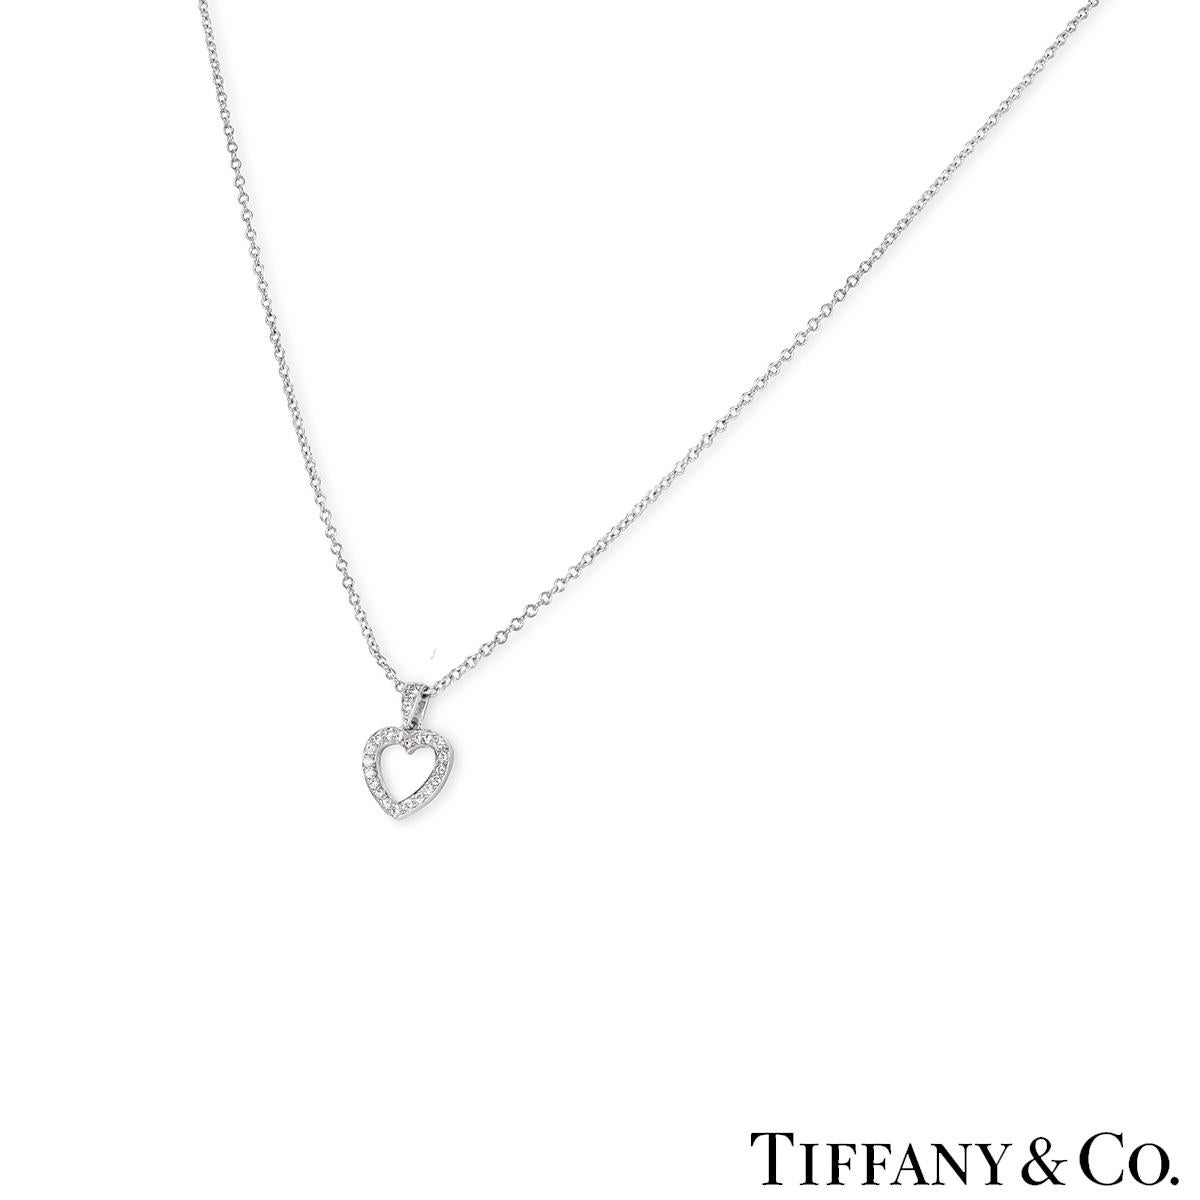 Ein schöner Herzanhänger mit Diamanten aus Platin von Tiffany & Co. Der Anhänger zeigt ein offenes Herzmotiv, das mit 22 runden Diamanten im Brillantschliff besetzt ist. Die Diamanten haben ein ungefähres Gesamtgewicht von 0,13 ct, Farbe F-G und